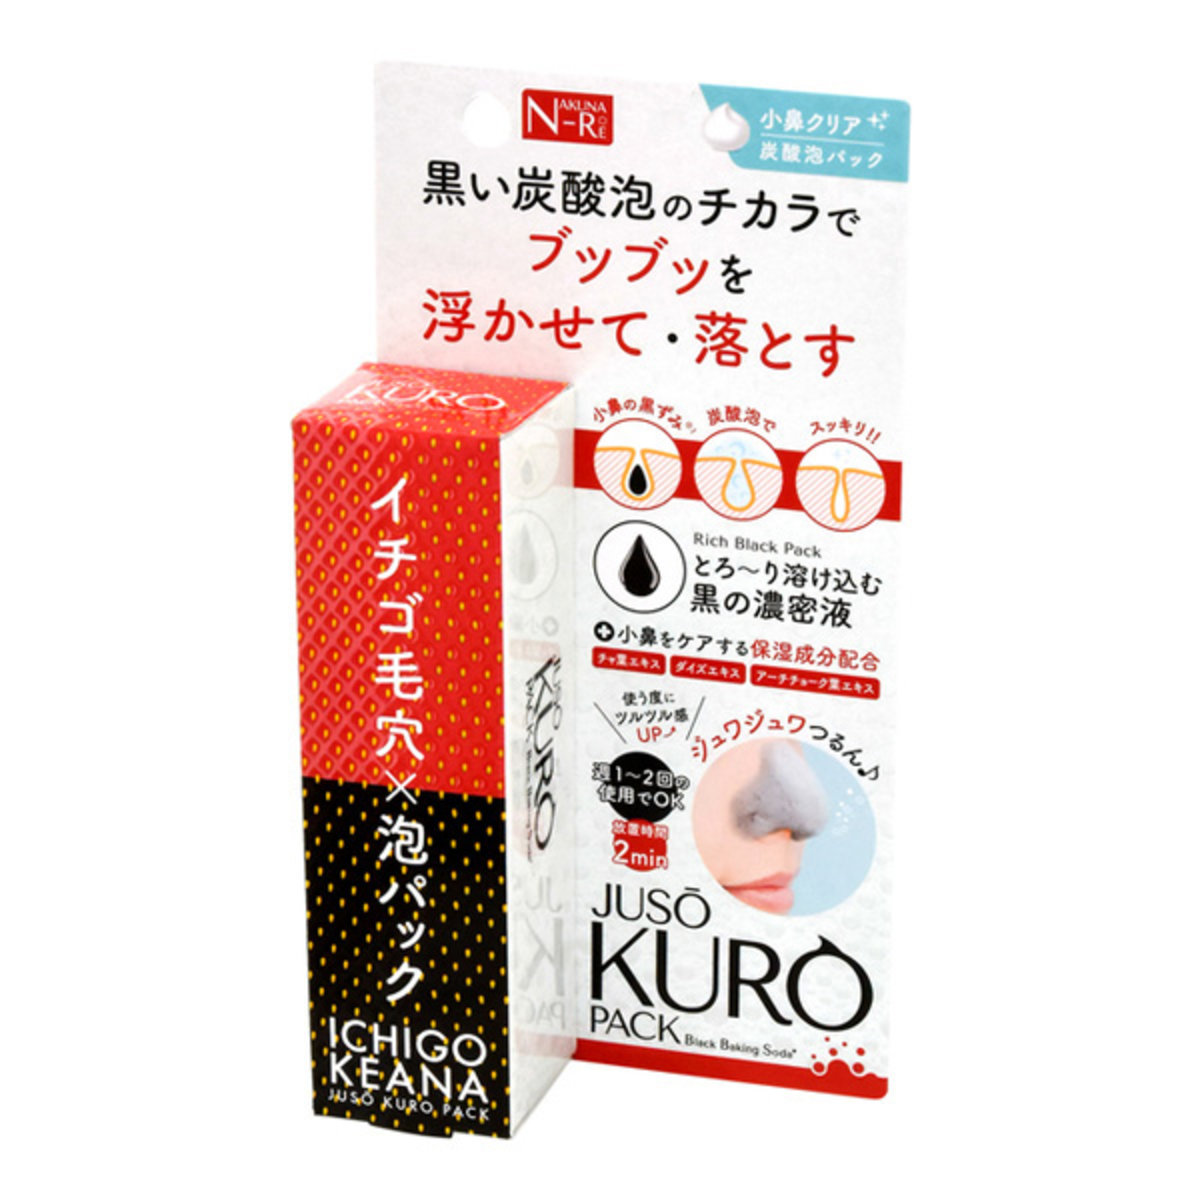 JUSO Kuro Pack-Ichigo keana50g (No packing)